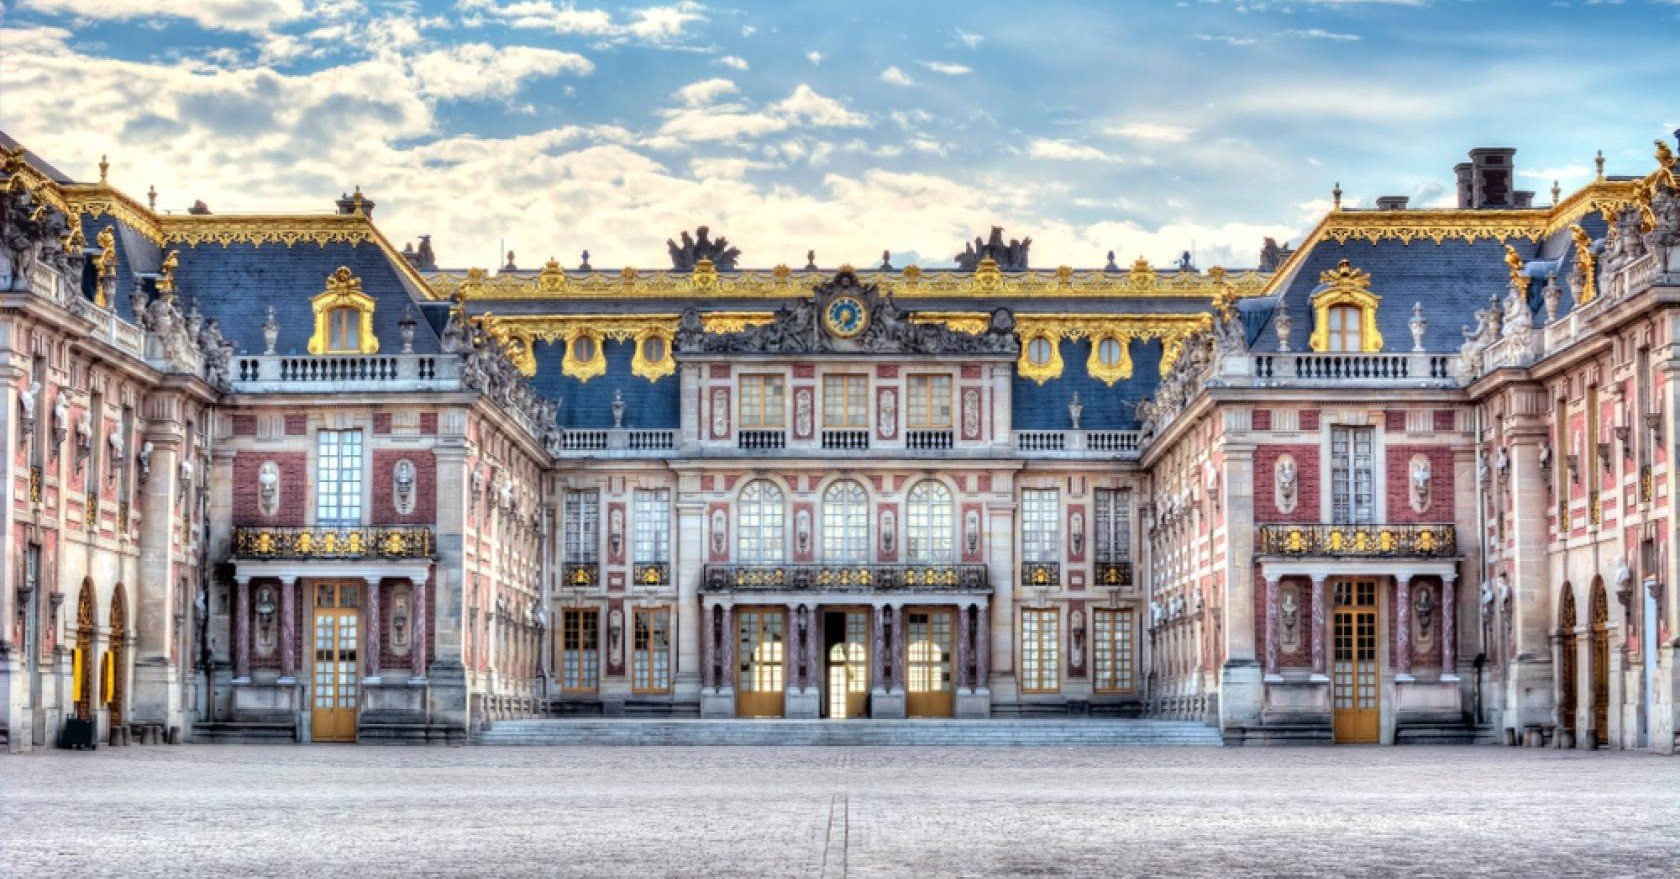 ヴェルサイユ宮殿とは絶対王政の視覚的表現 長澤翼 Note